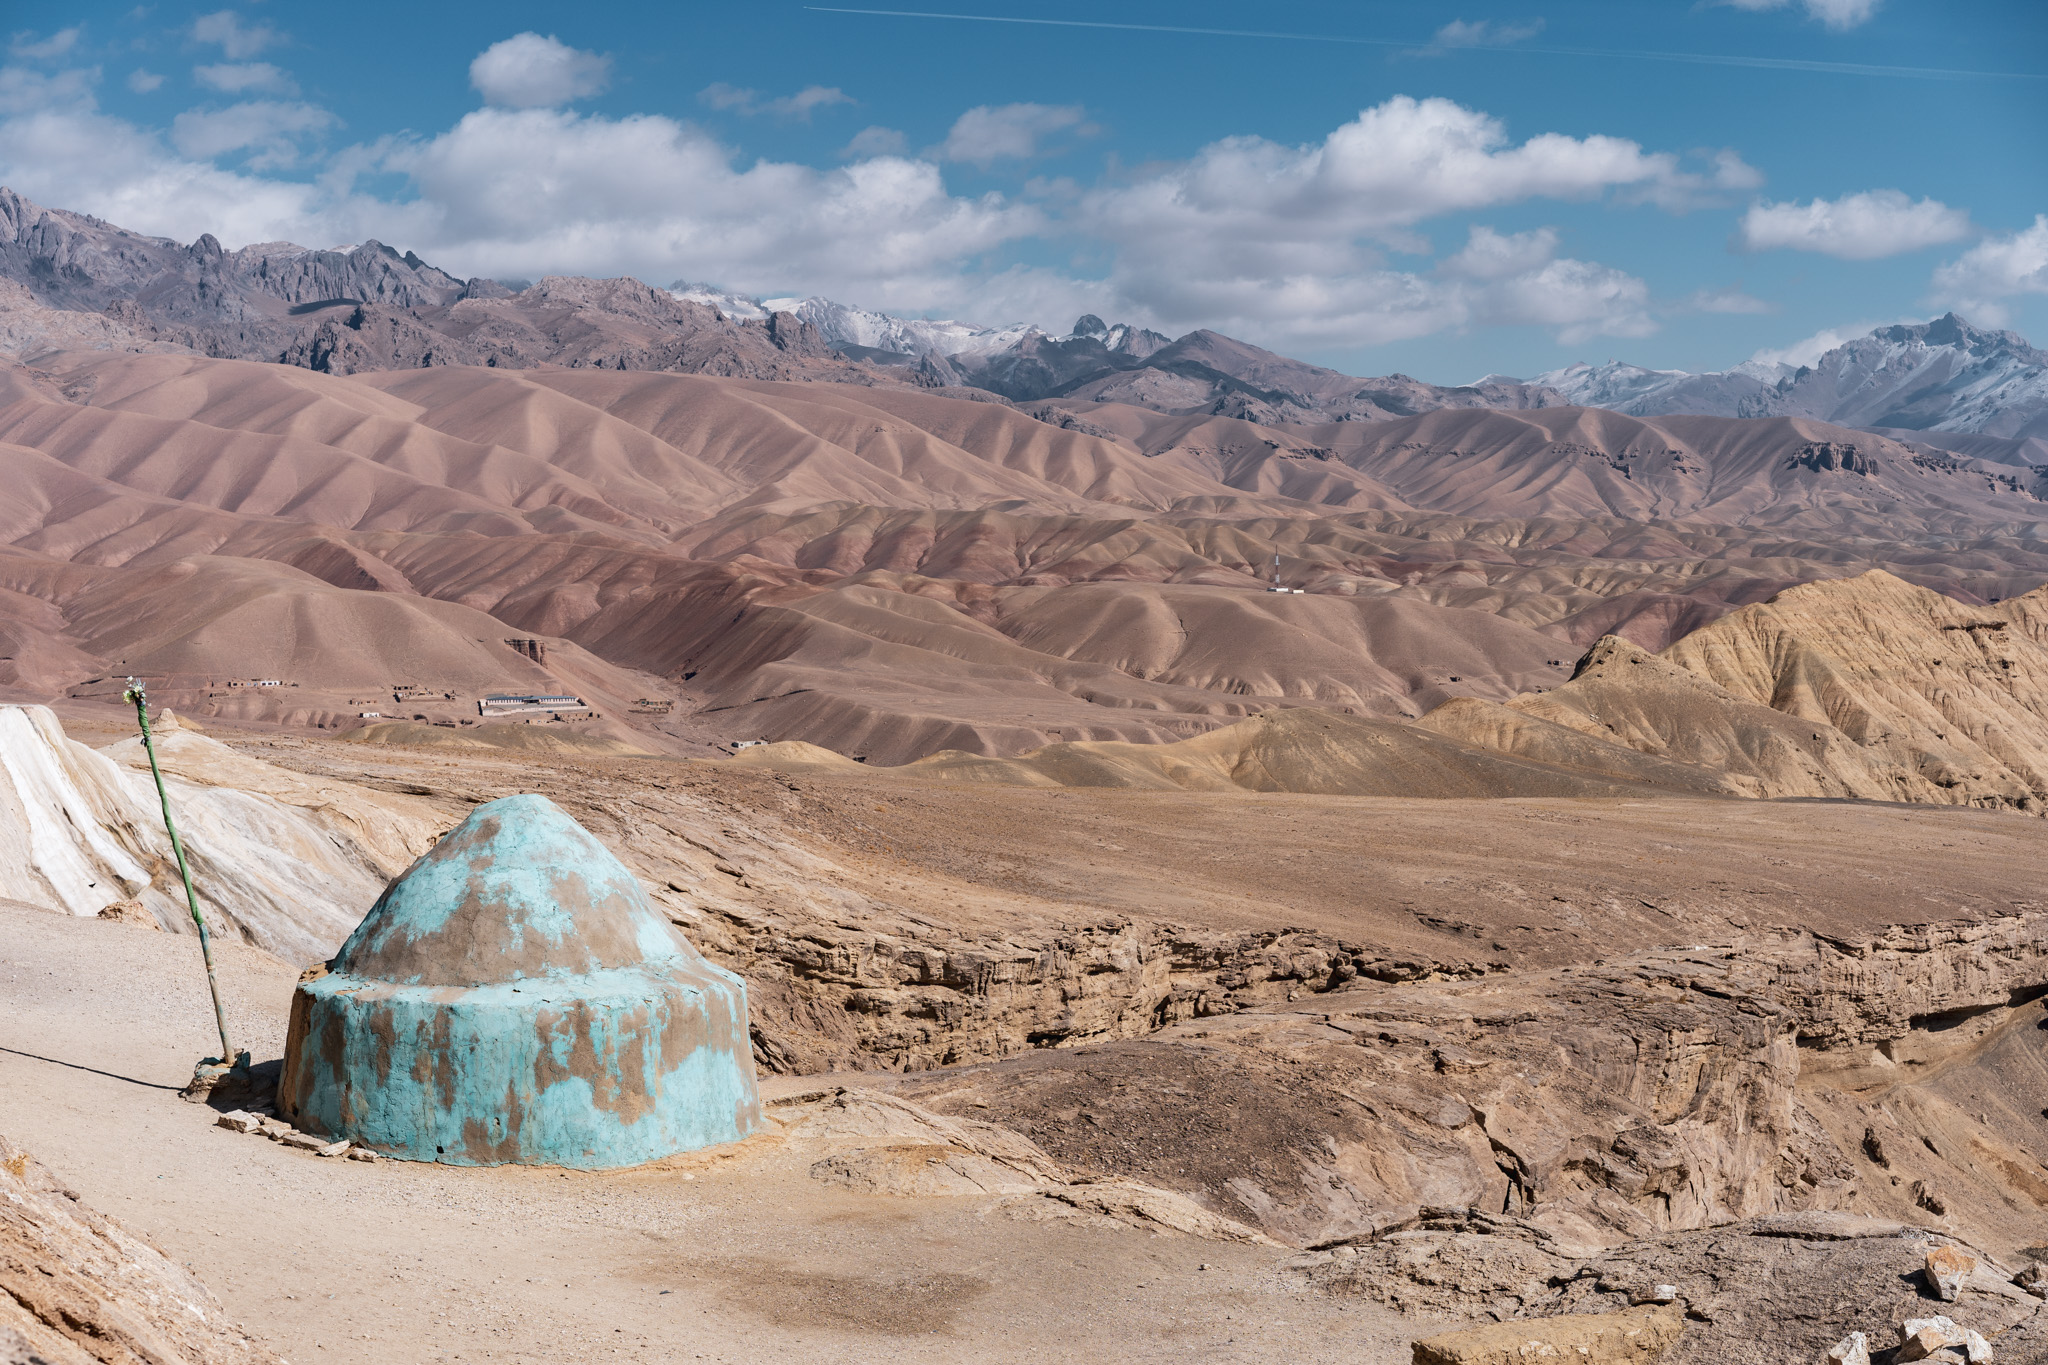 View of the Bamiyan Valley from Dara-e Ajdahar